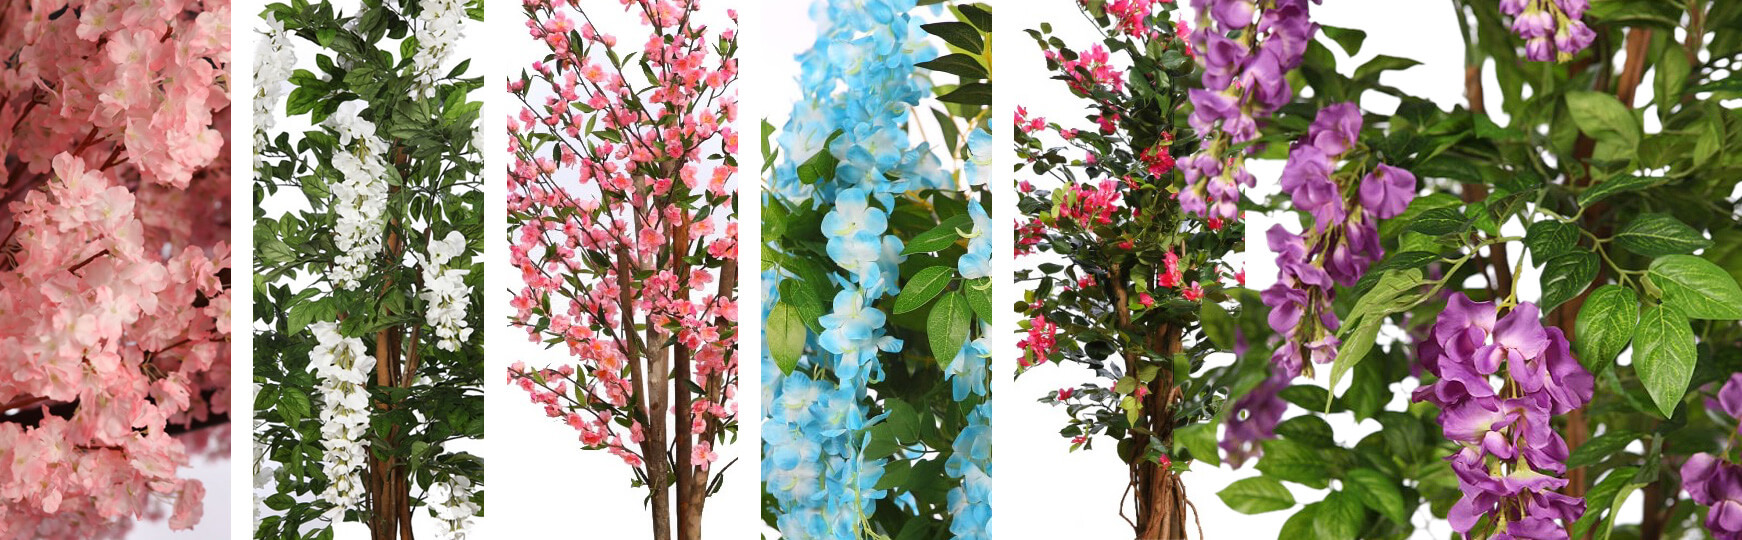 árboles florados artificiales baratos